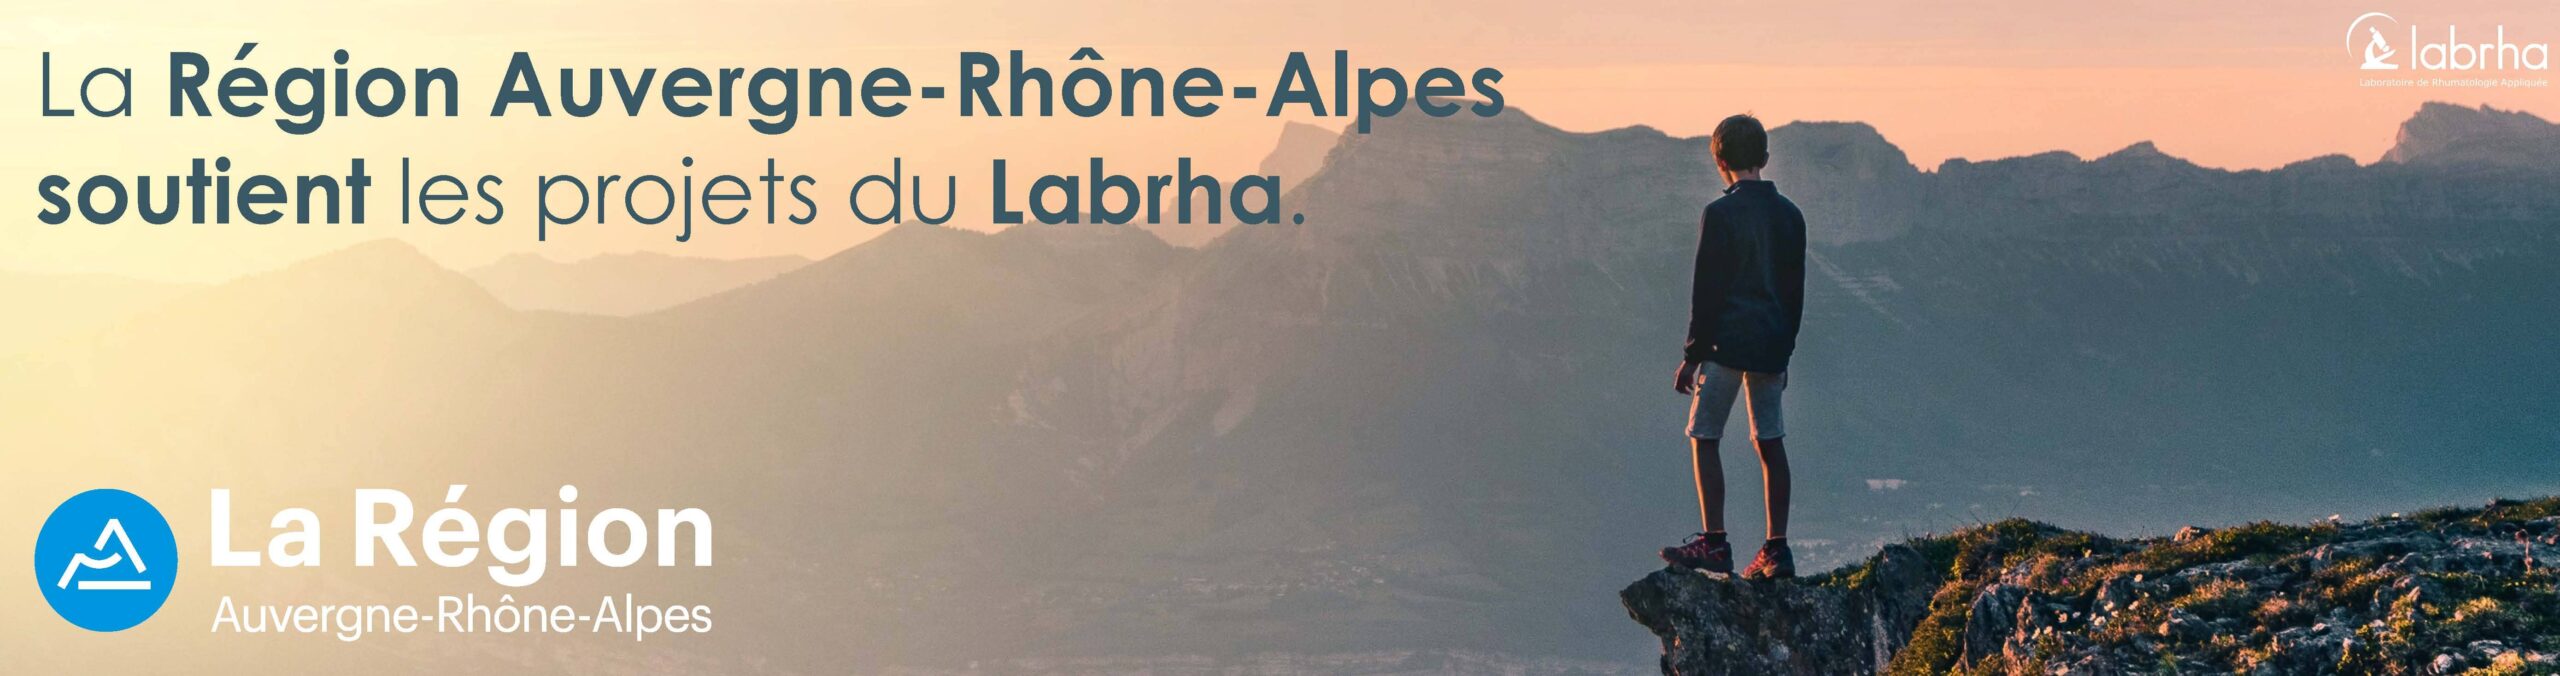 La région Auvergne-Rhone-Alpes soutient les projets du Labrha